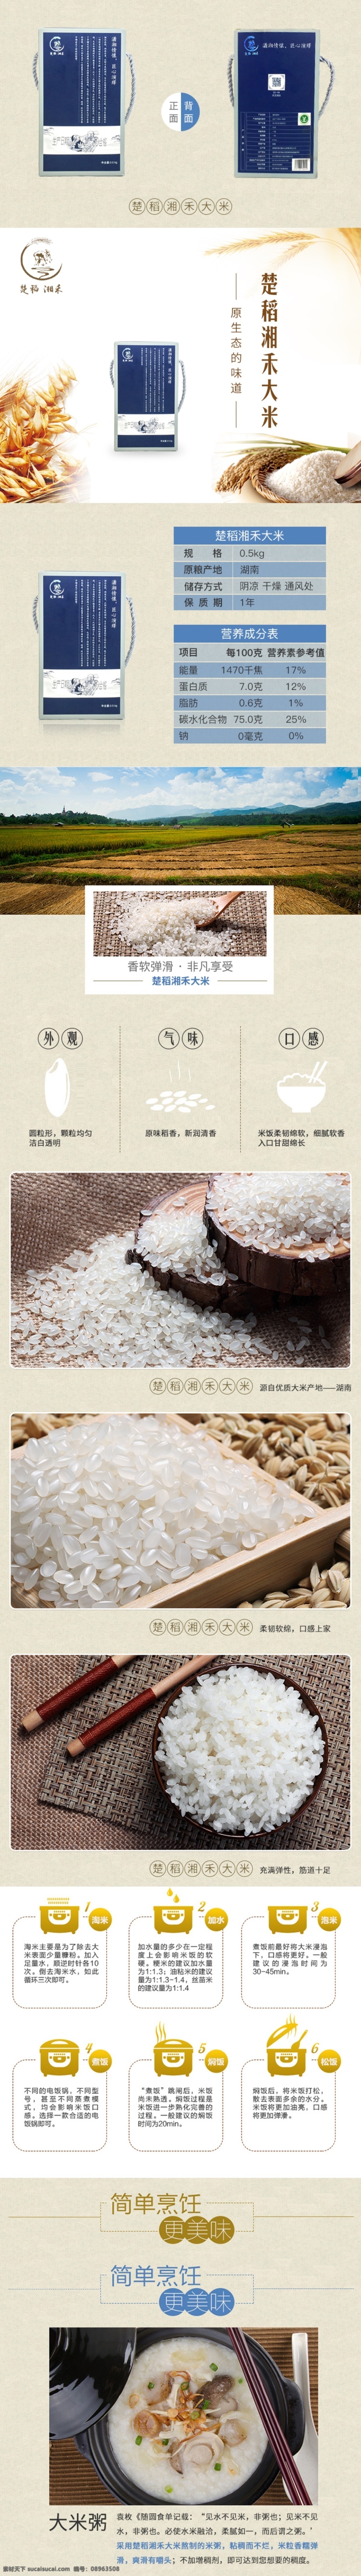 原创 大米 产品 详情 图 产品的 h5 镶嵌图形测验